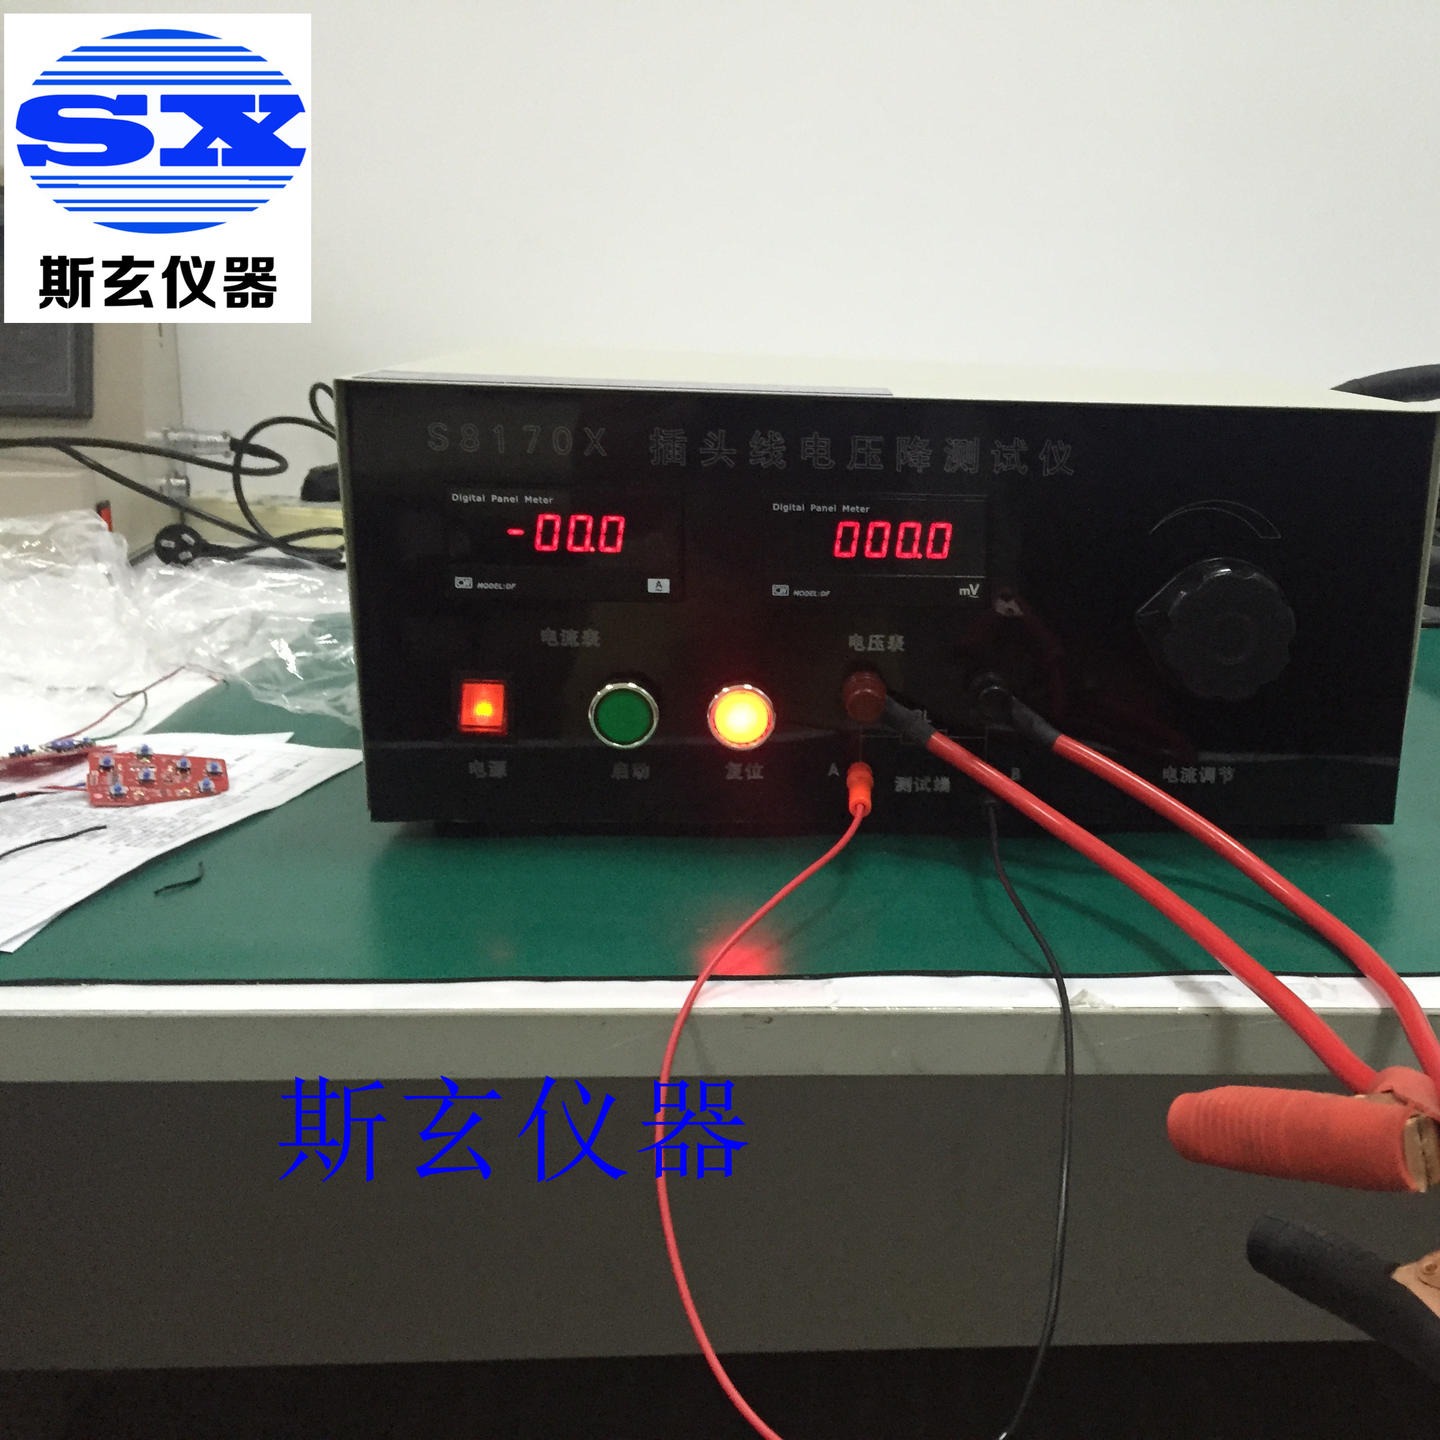 销售插头接口优劣测试仪 电压降测试仪器上海斯玄厂家现货供应